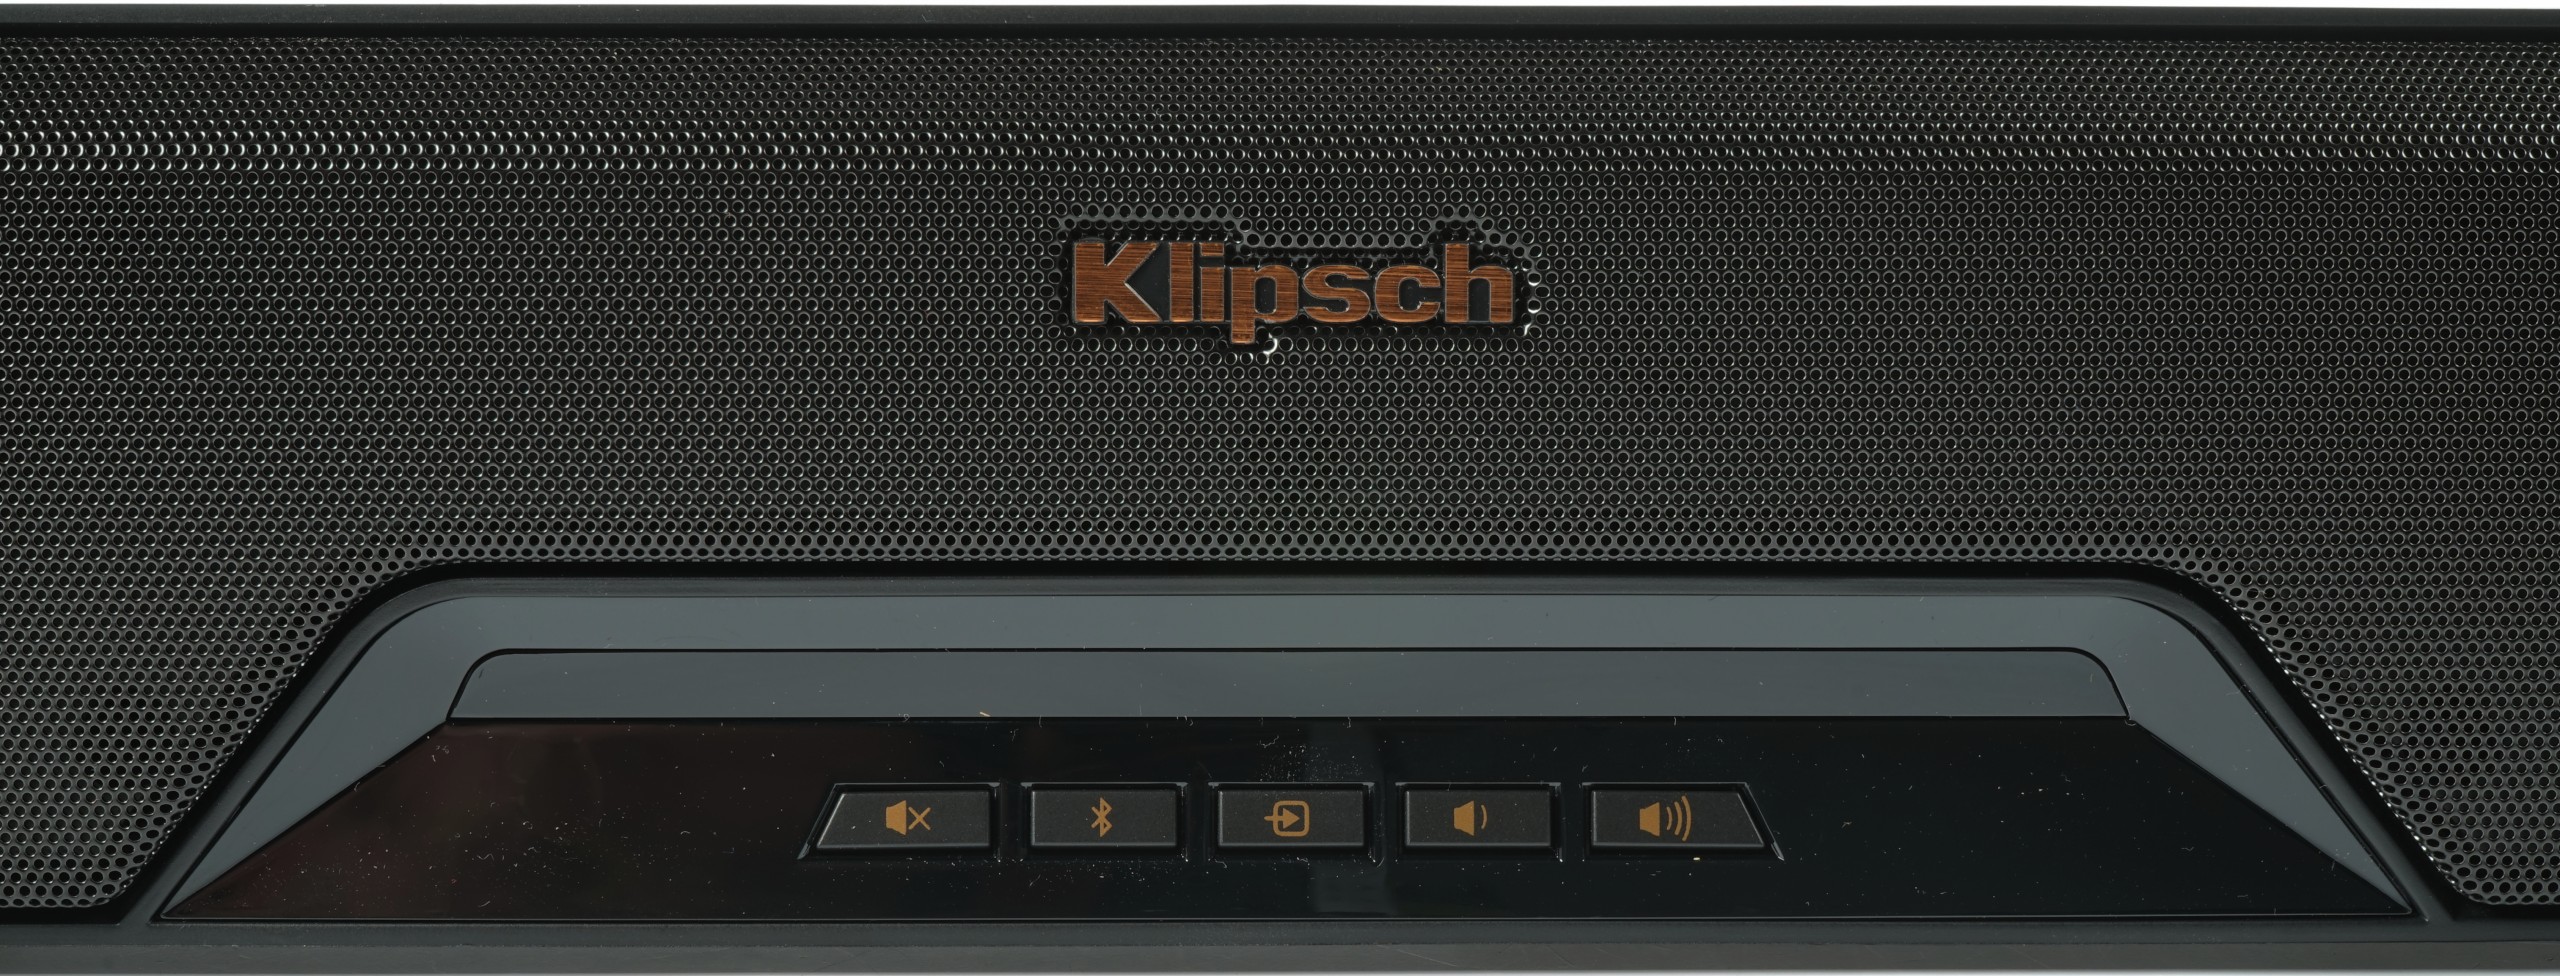 Klipsch RSB-14 Soundbar - Controls